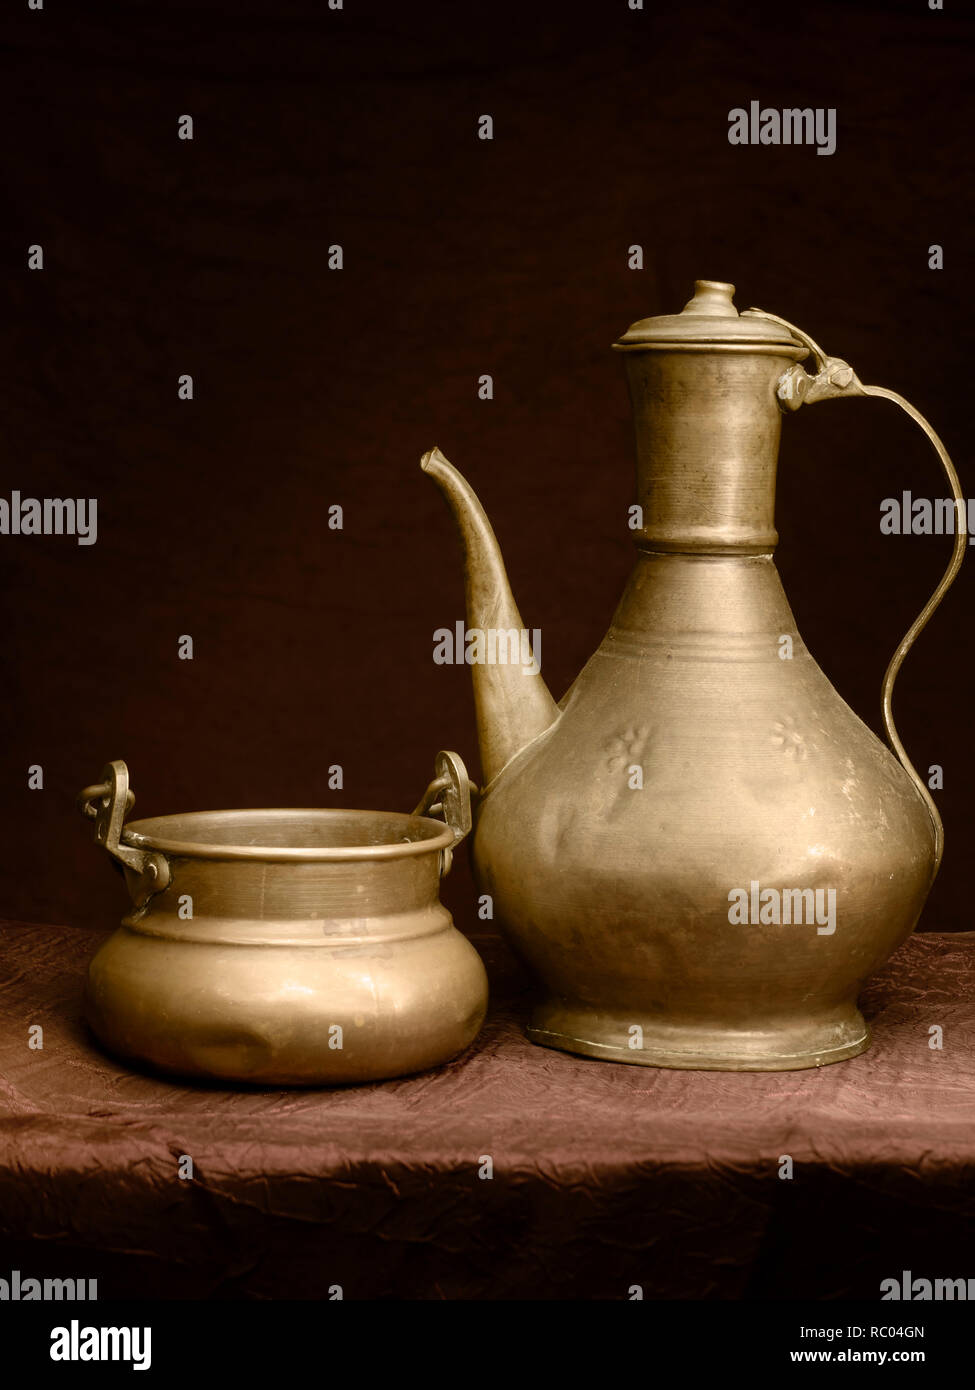 Copperware. Teekanne oder Kaffeemaschine oder Wasserkocher ... vielleicht im Nahen und Mittleren Osten. Mit Schüssel. Stockfoto